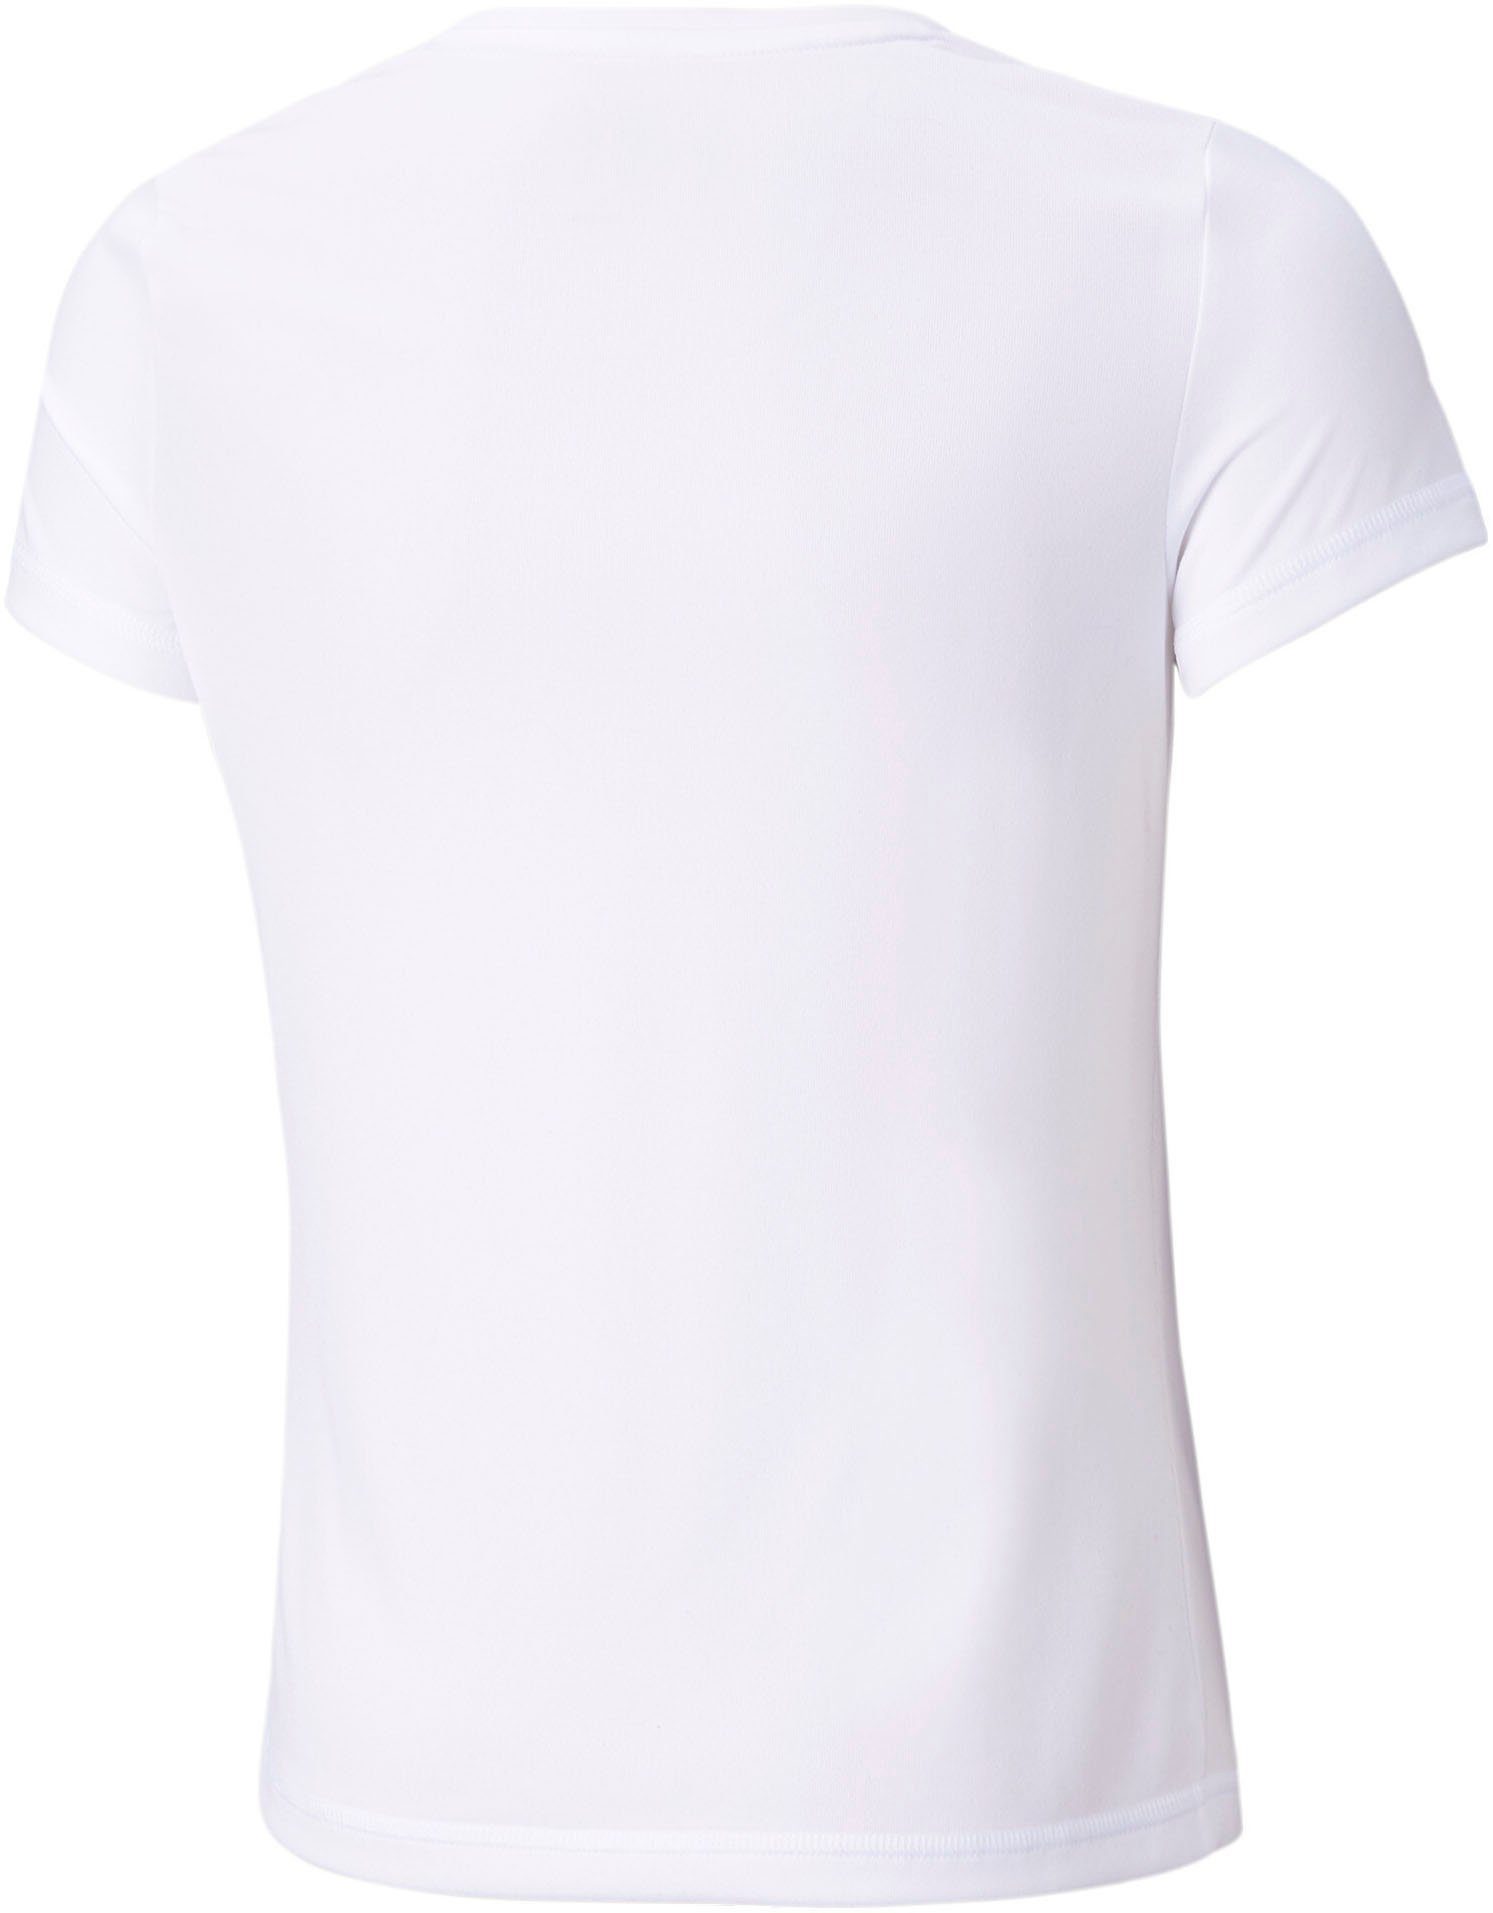 PUMA TEE White ACTIVE Puma T-Shirt G